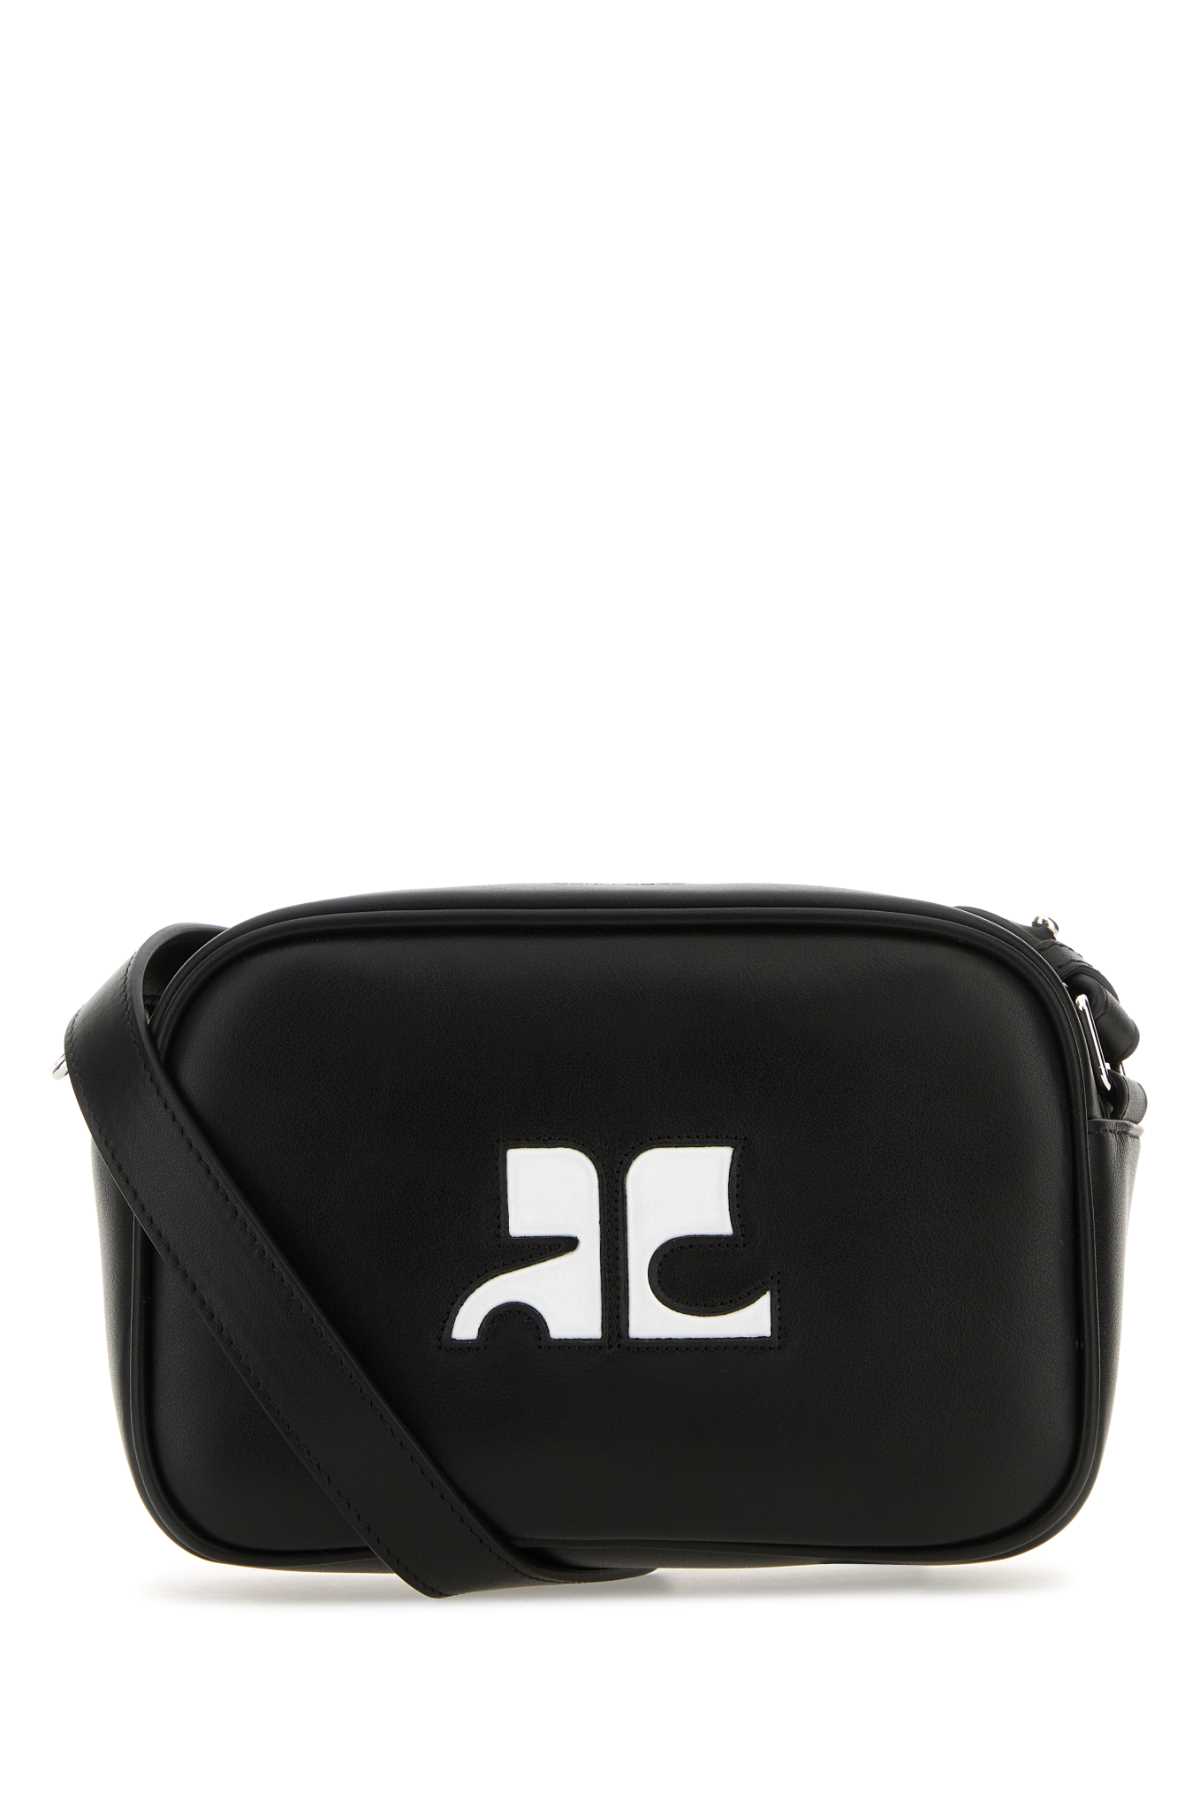 Courrèges Black Leather Rã©ã©dition Shoulder Bag